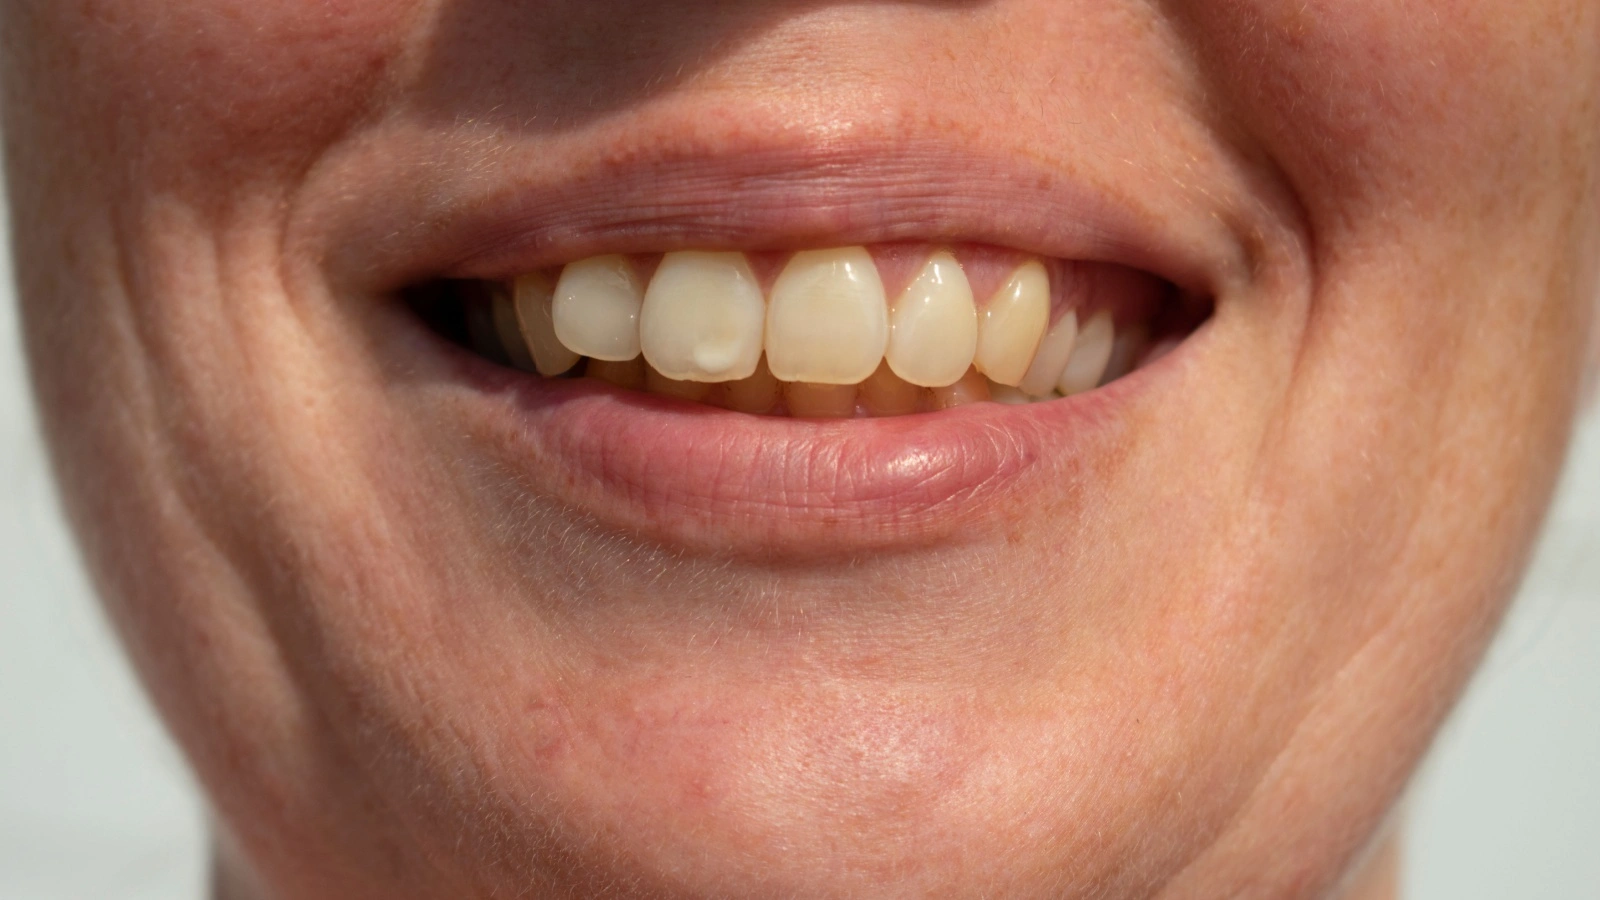 ما هي أسباب ظهور بقع بيضاء على الأسنان؟ وما علاقتها بنقص الكالسيوم؟